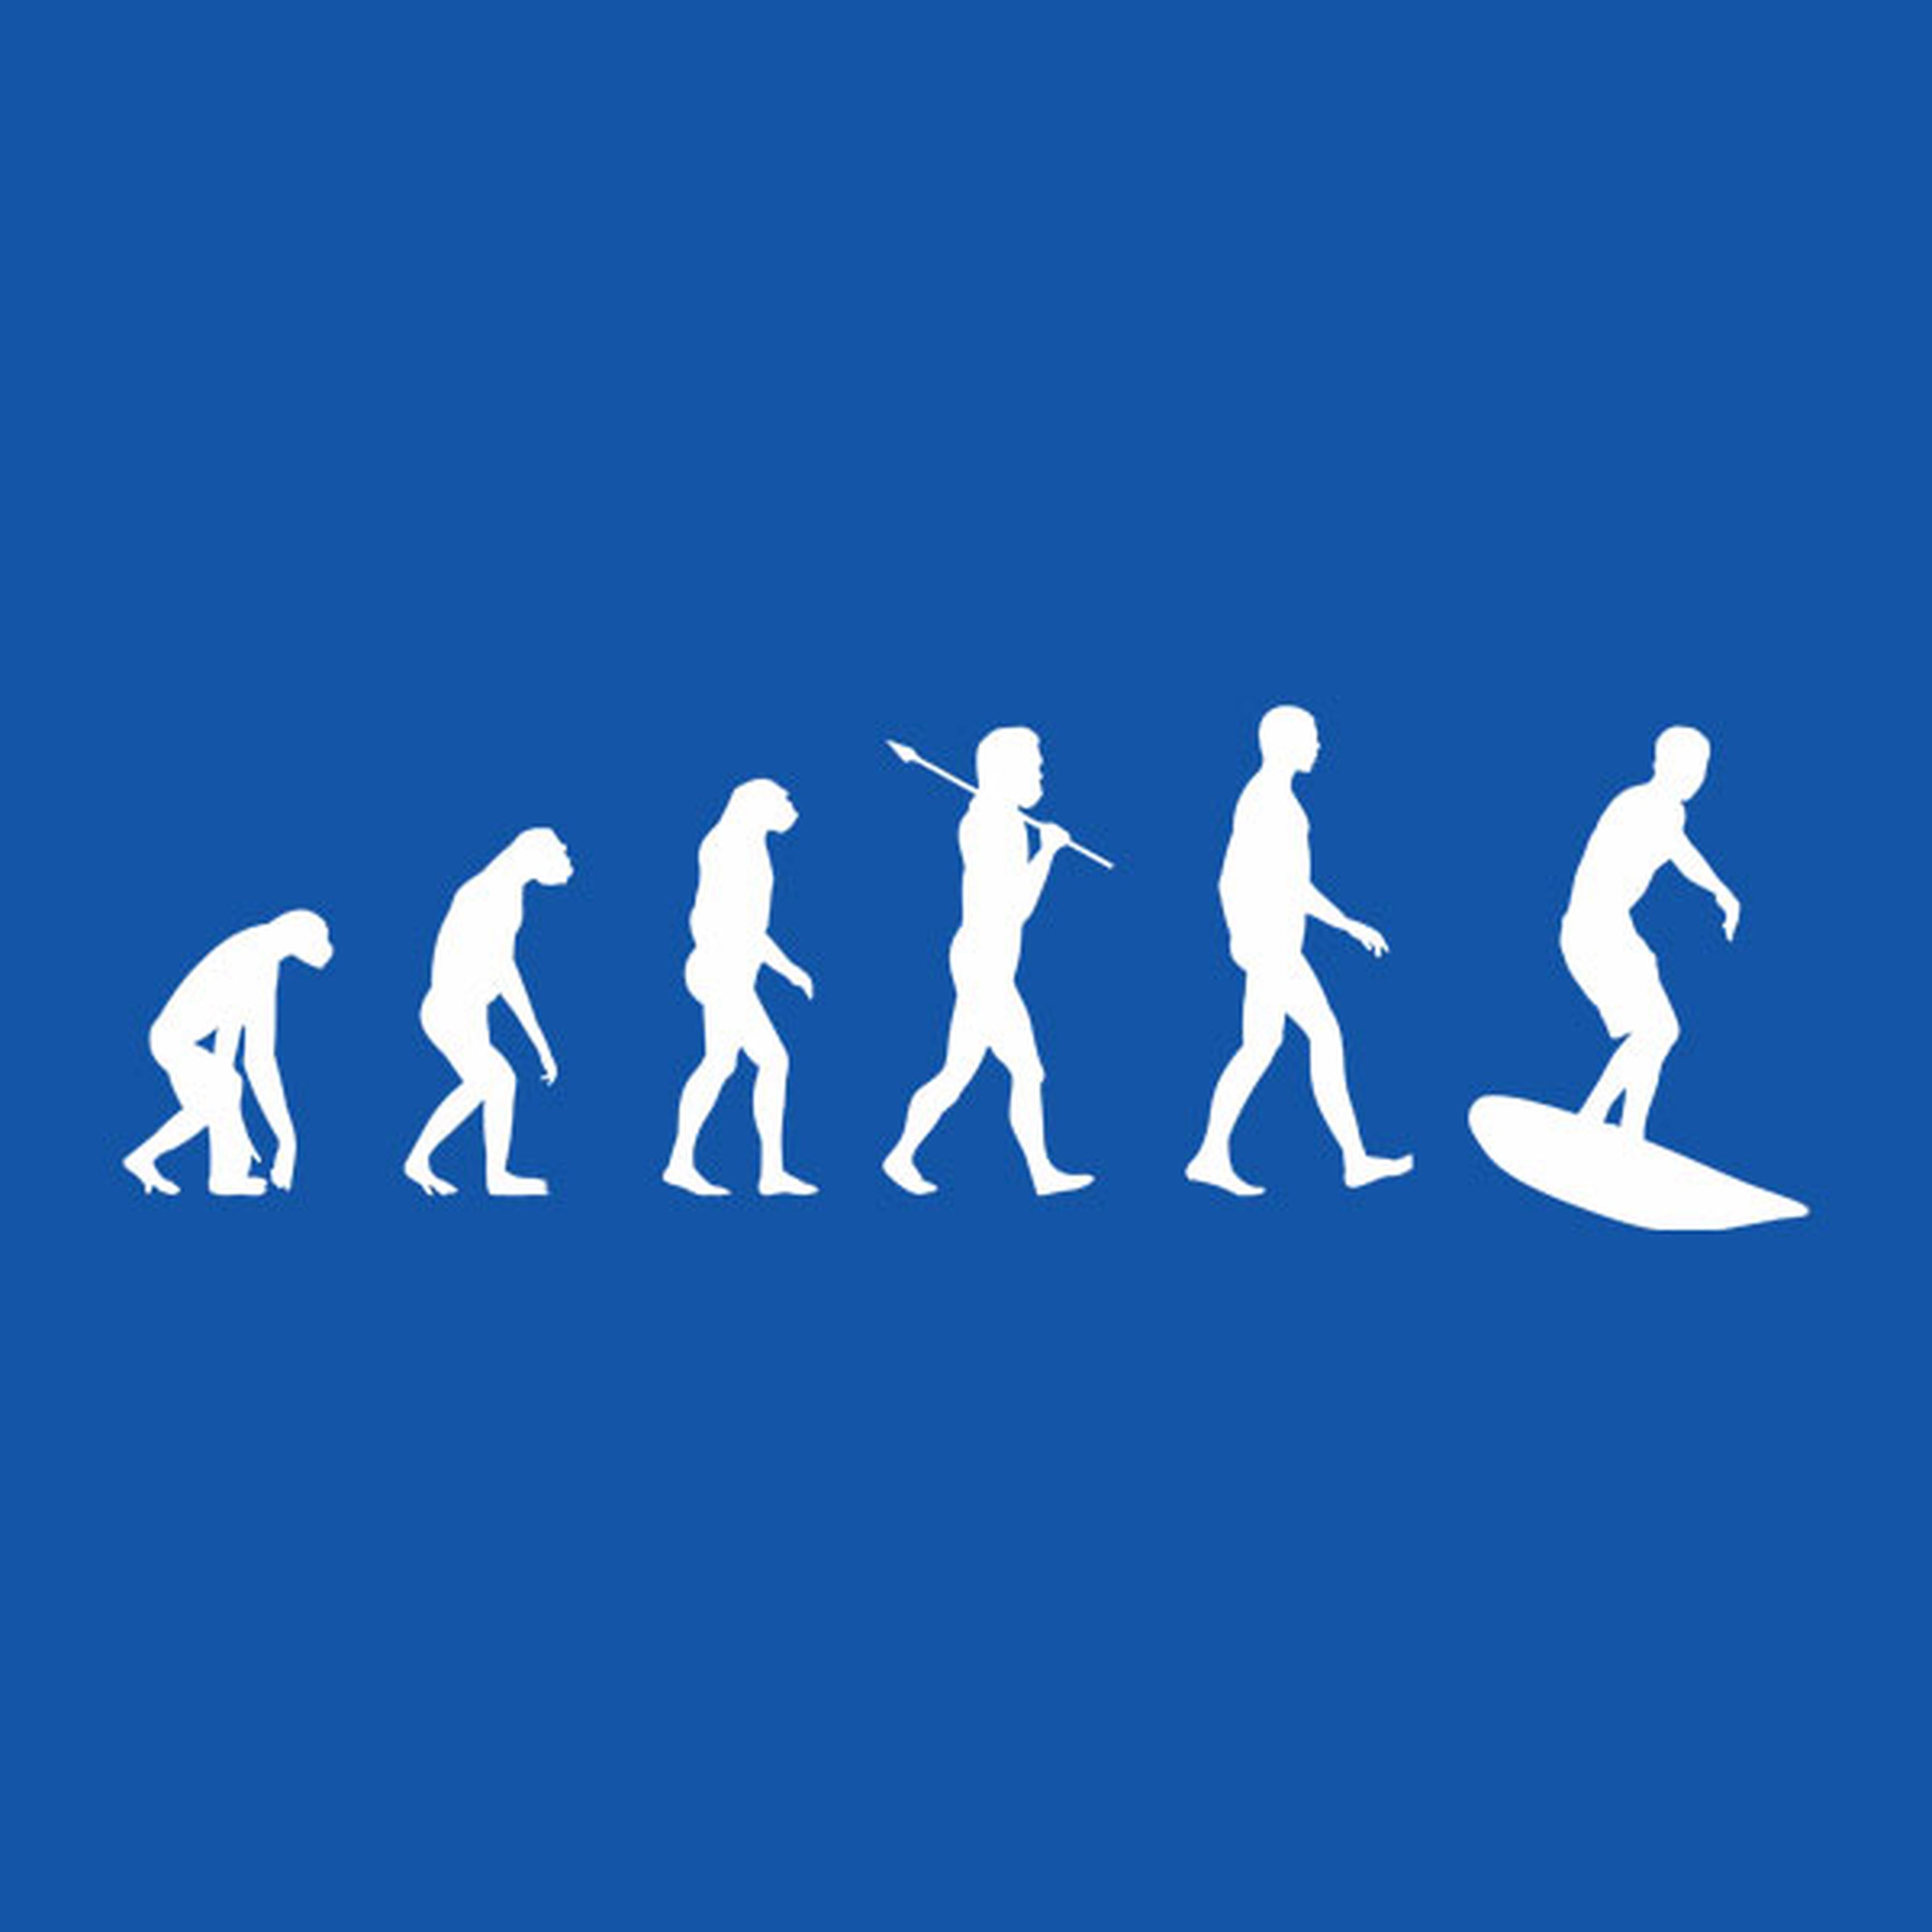 Evolution of Surfer T-shirt